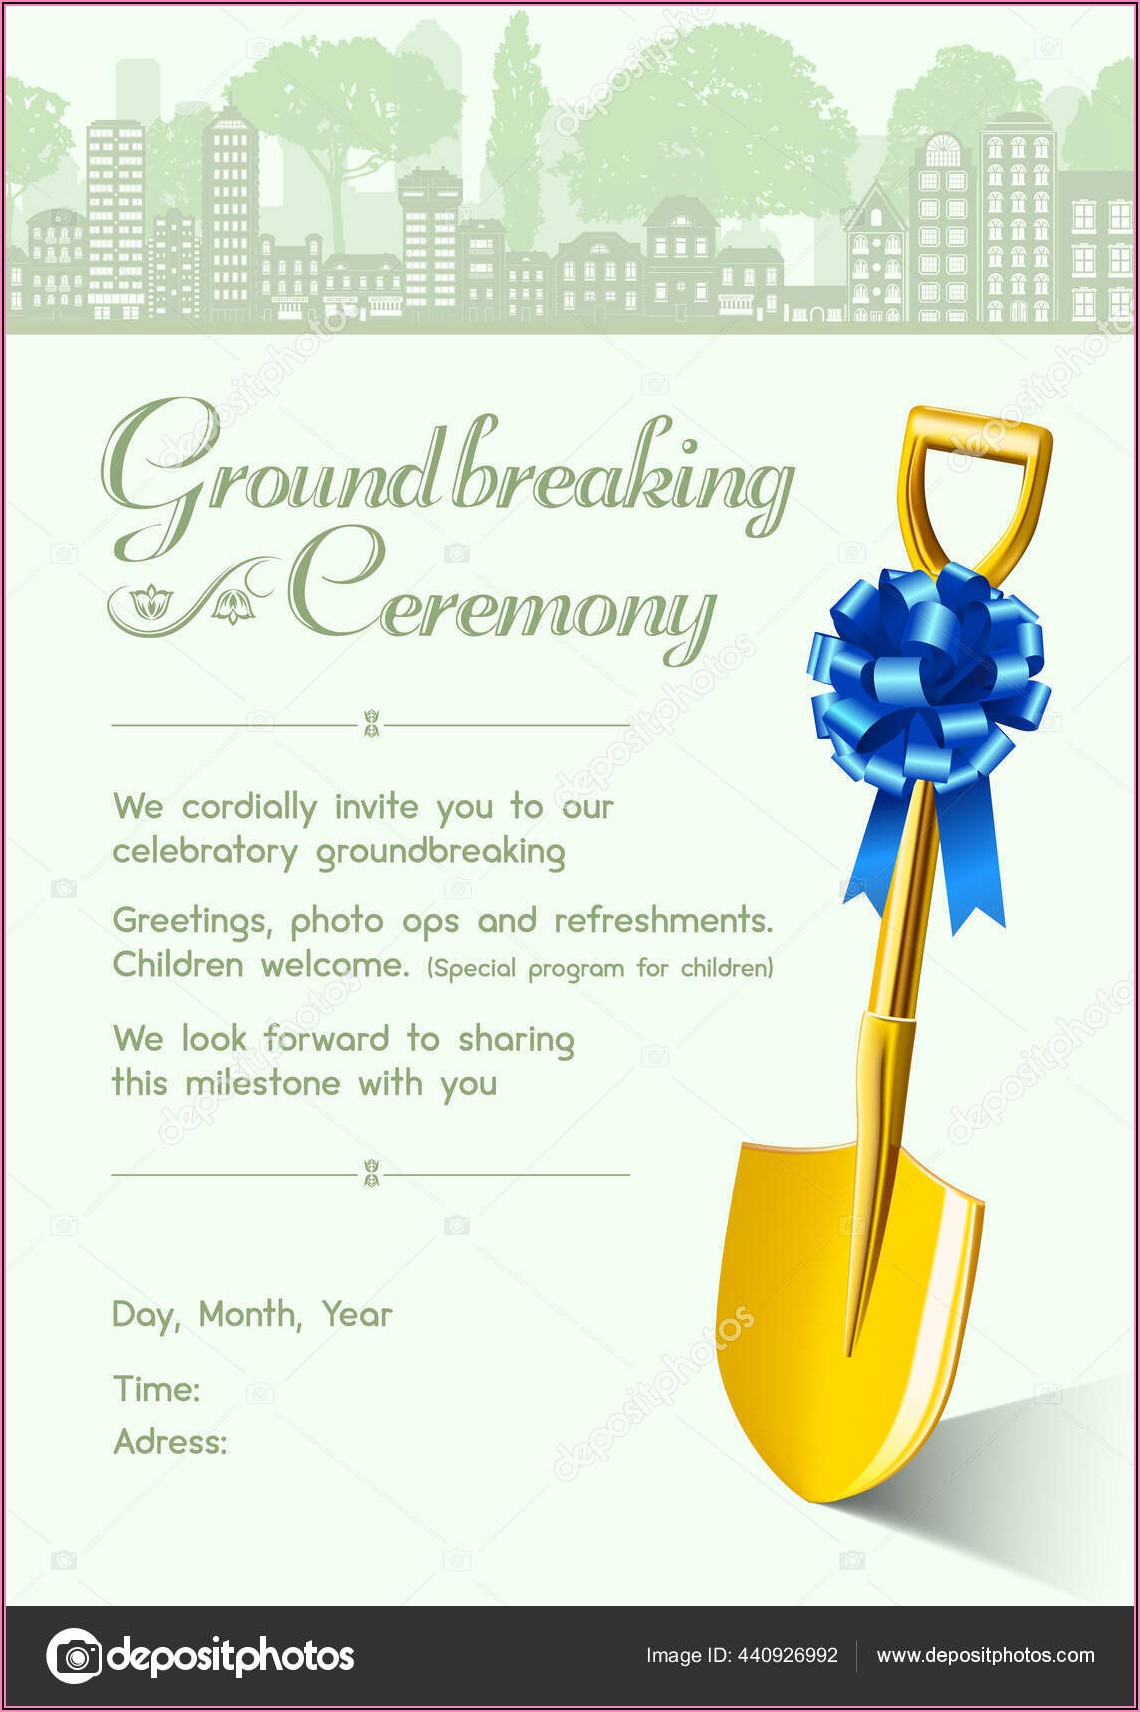 Groundbreaking Ceremony Invitation Wording